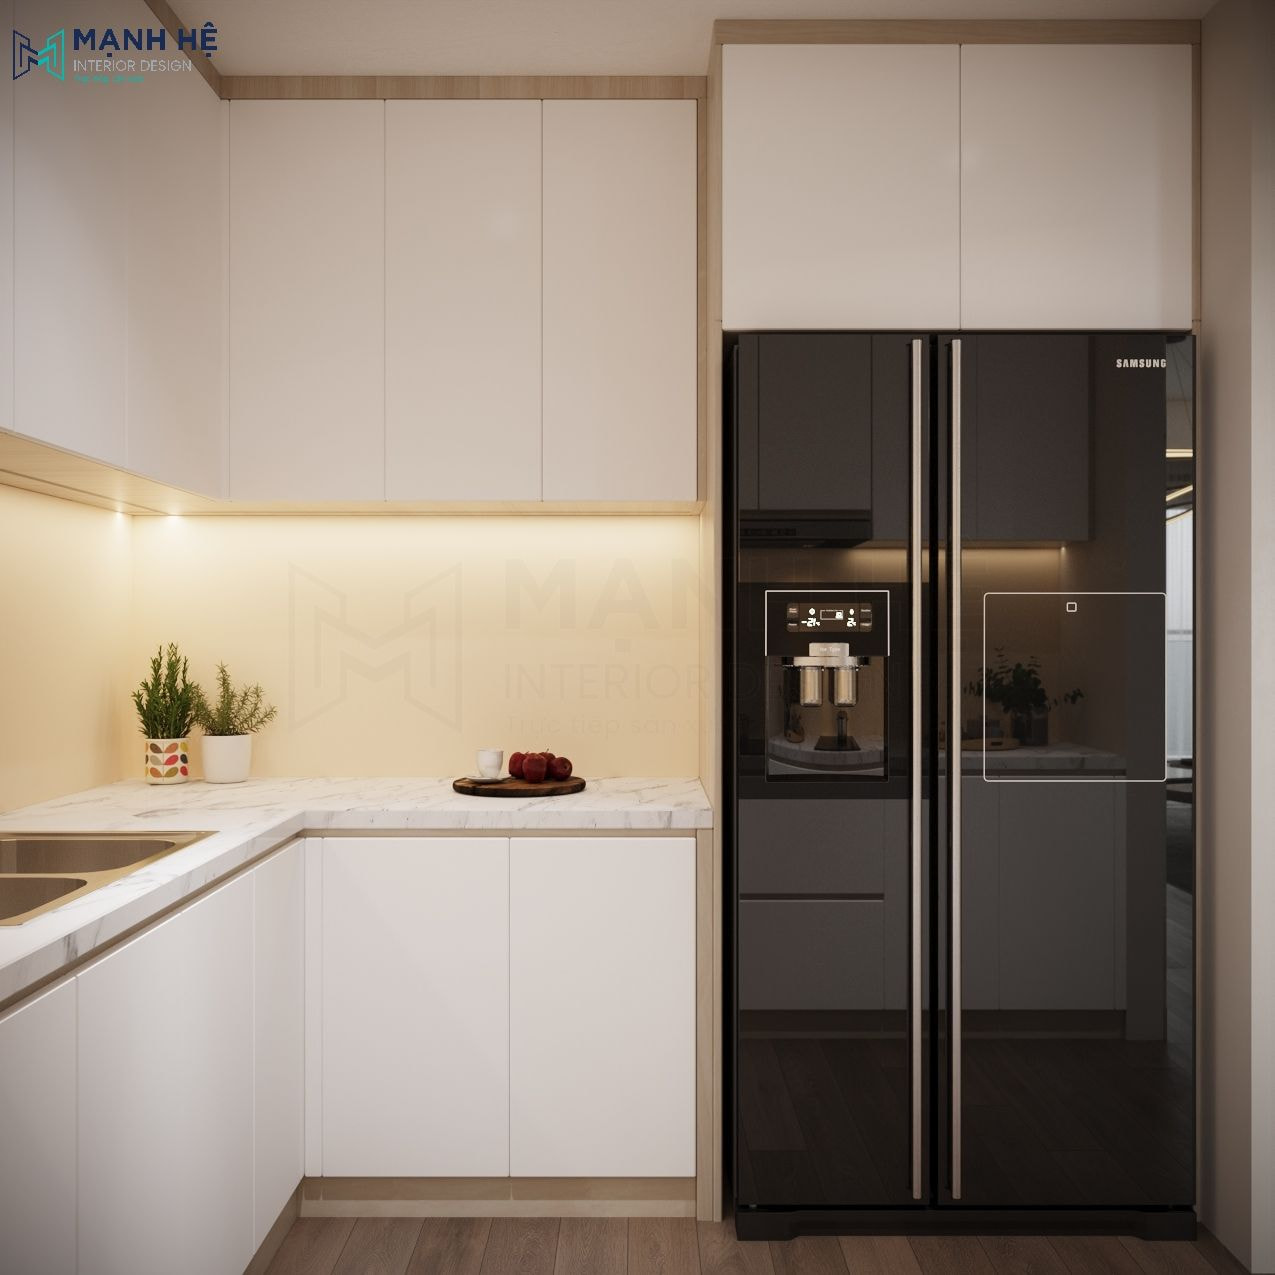 Tận dụng không gian trên tủ lạnh làm tủ chứa tối ưu không gian lưu trữ cho gia chủ